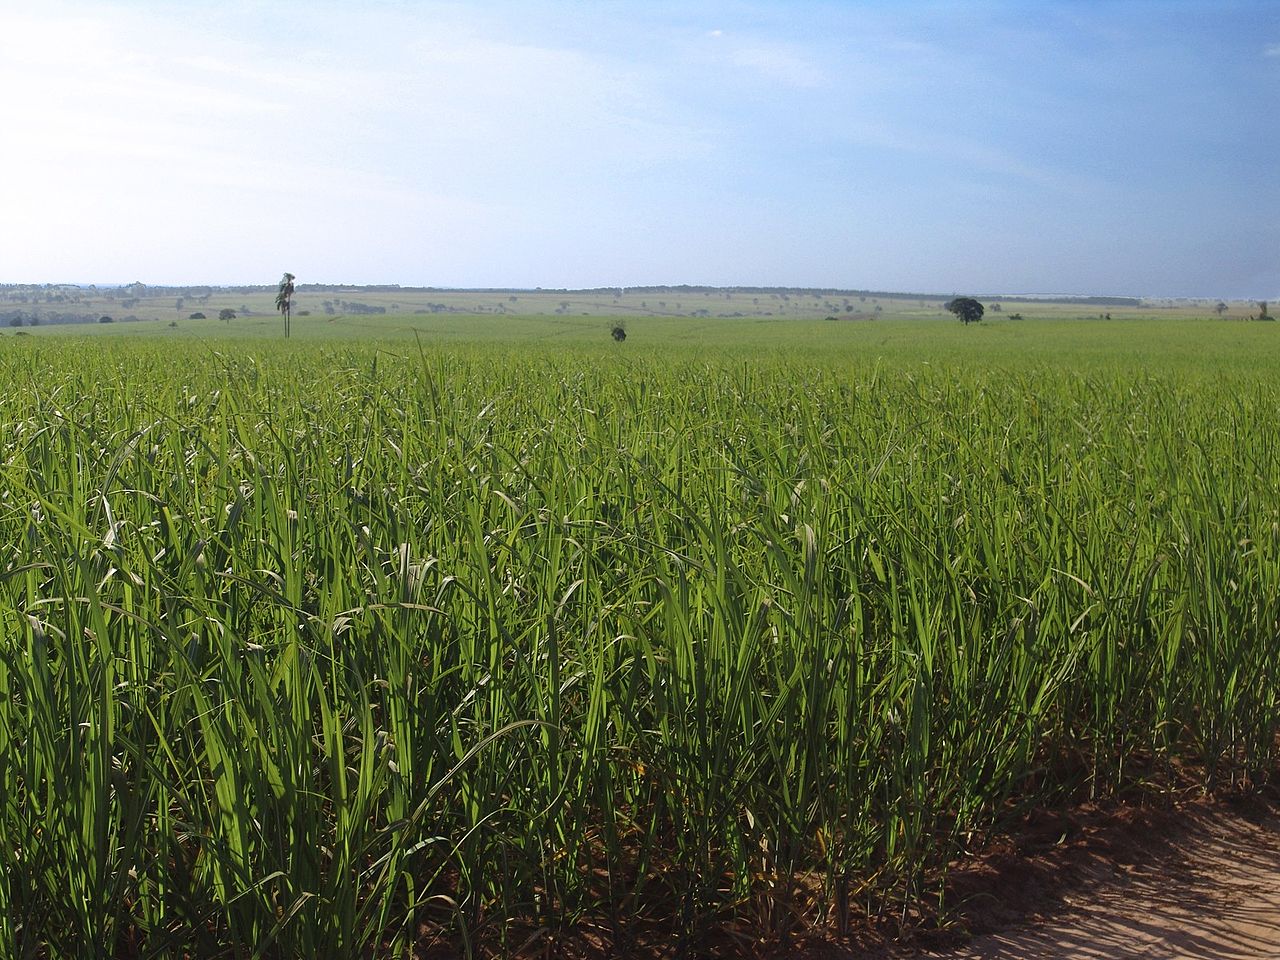 Com ajuda de subsídios, Índia deve superar Brasil e se tornar a maior produtora de cana-de-açúcar do mundo